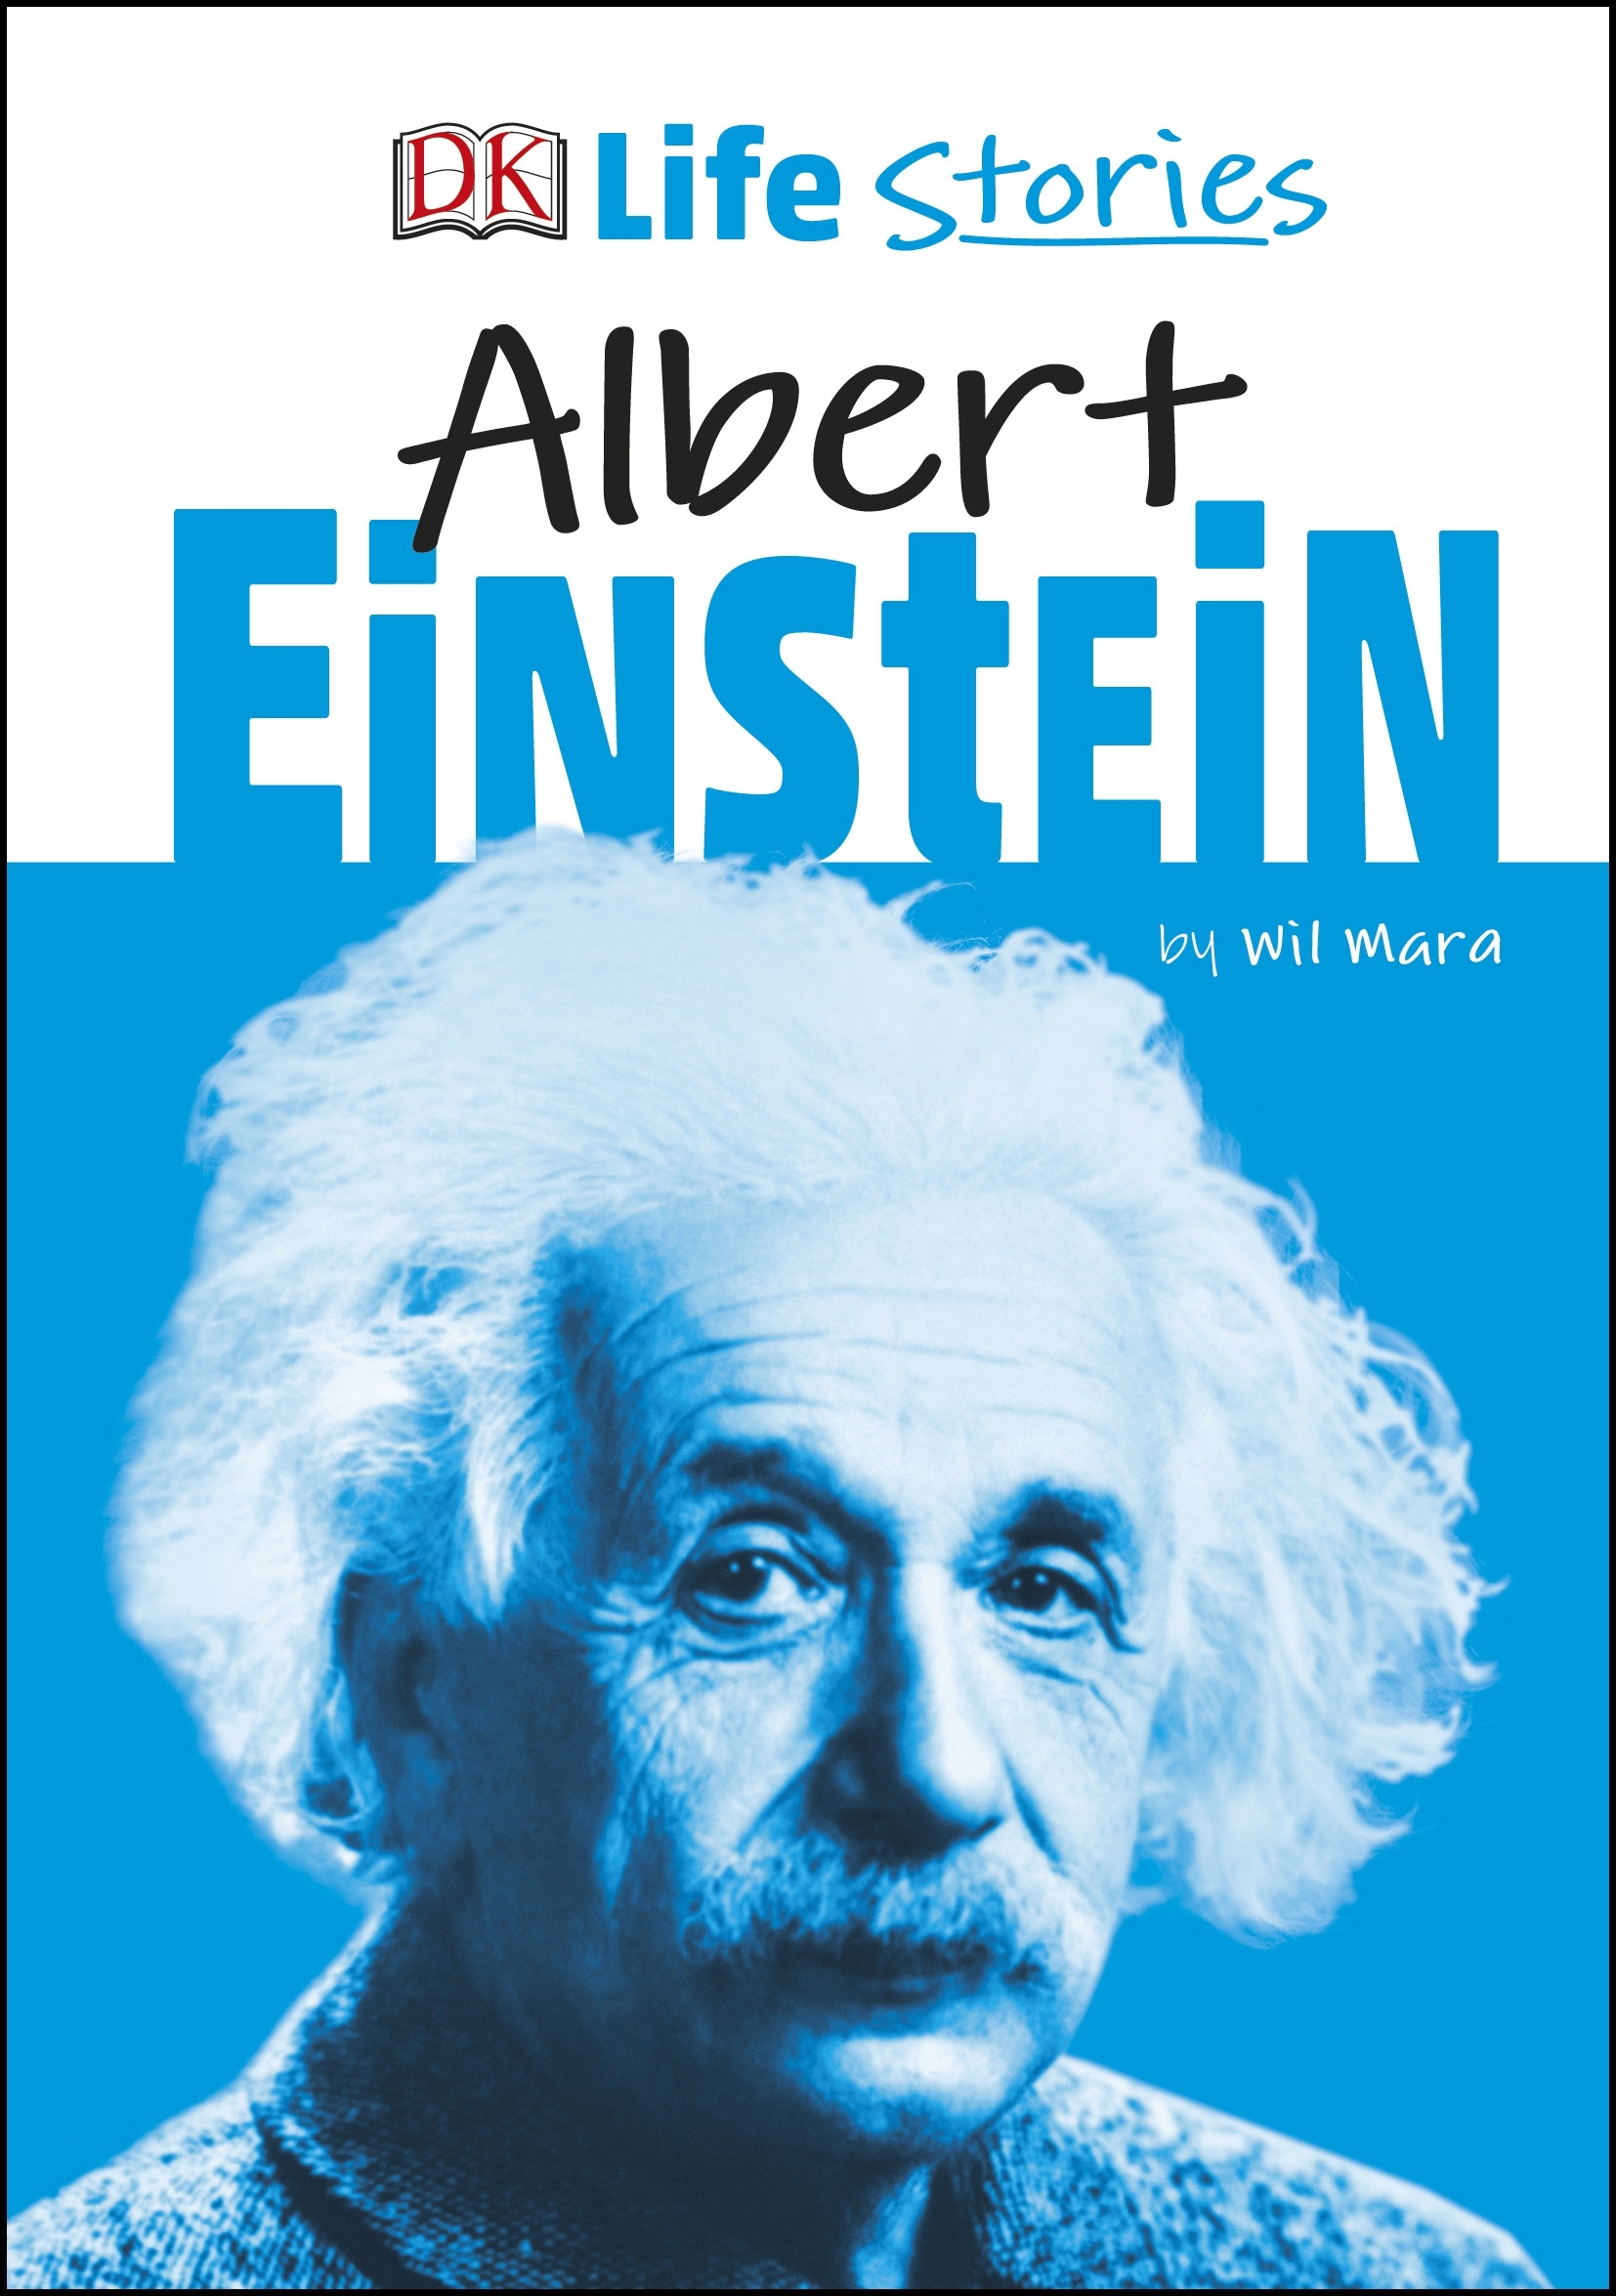 biography of albert einstein book